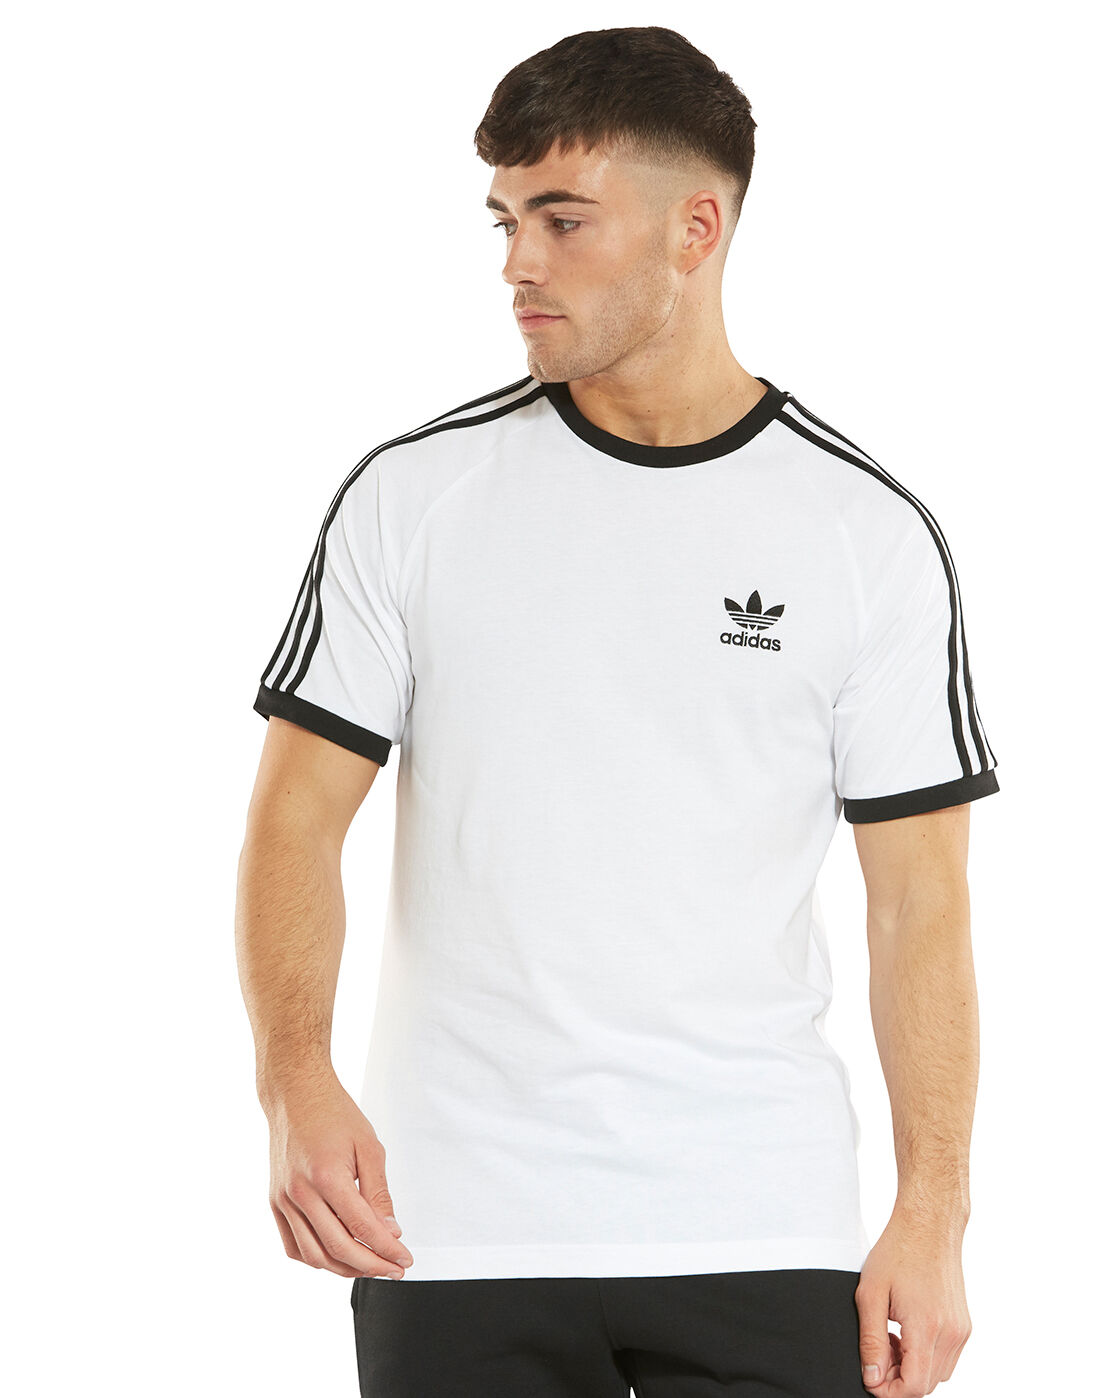 adidas Originals White Stripes T-Shirt 